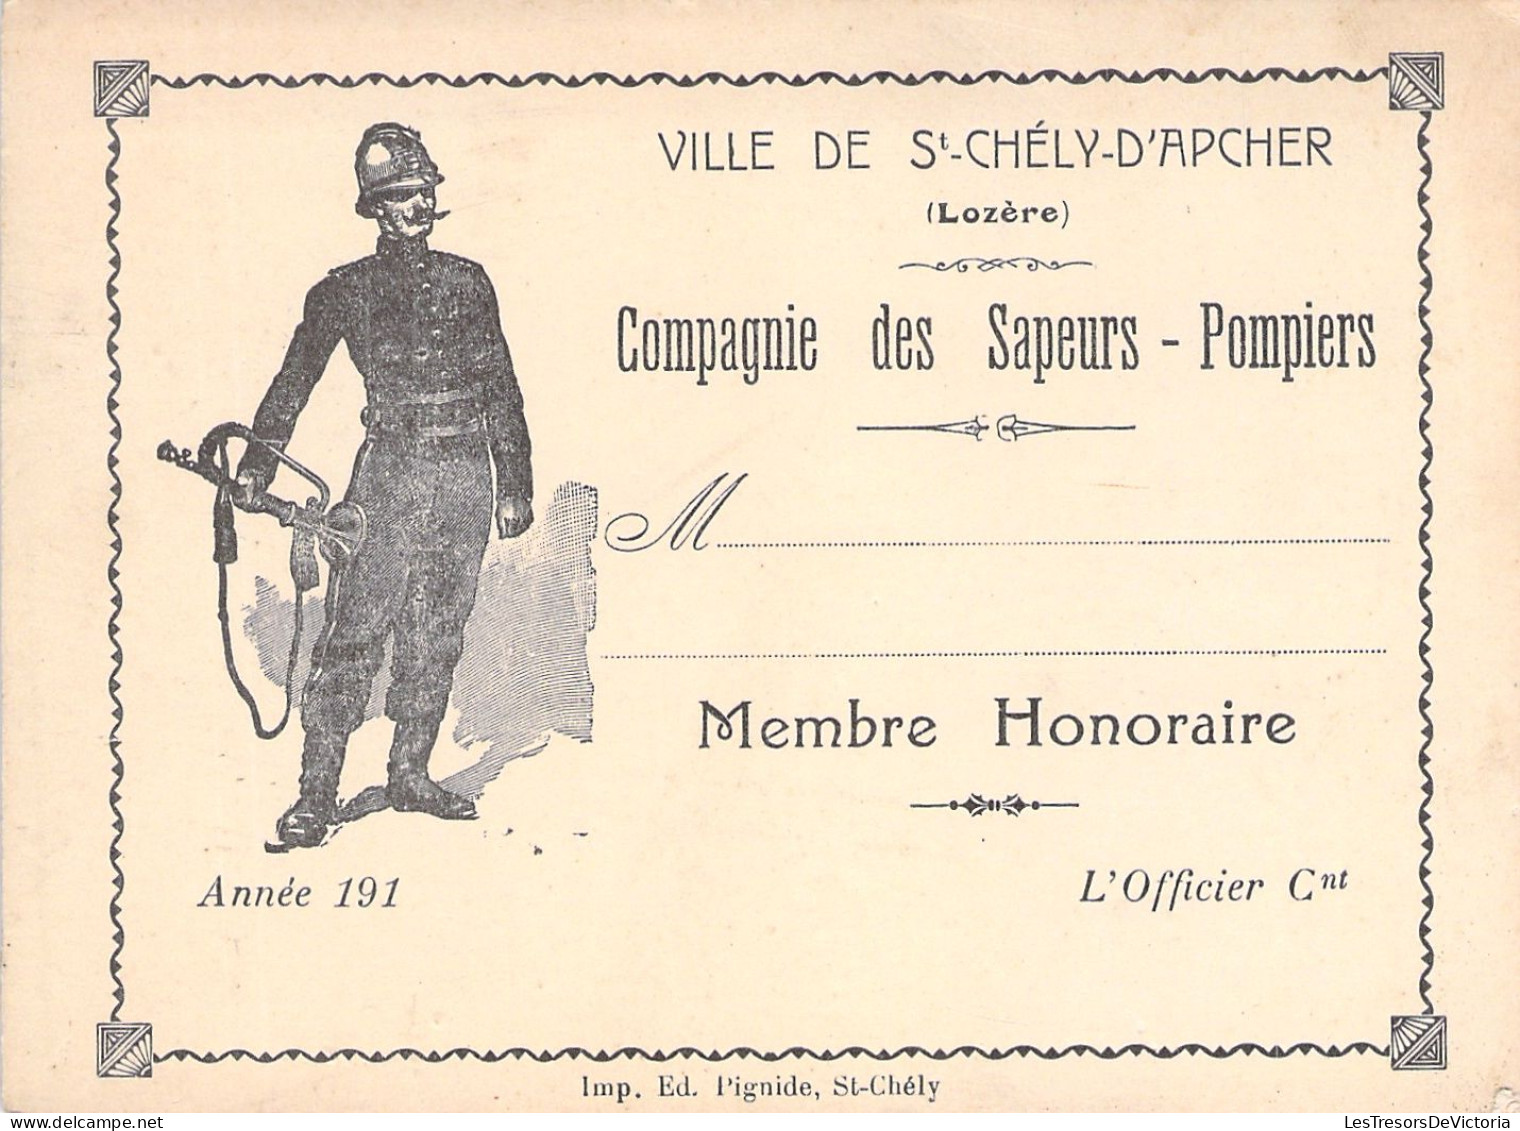 Ville De St Chely D'apcher - Lozere - Compagnie Des Sapeurs Pompiers - Membre Honoraire - Carte De Membre - 12x9cm - Membership Cards